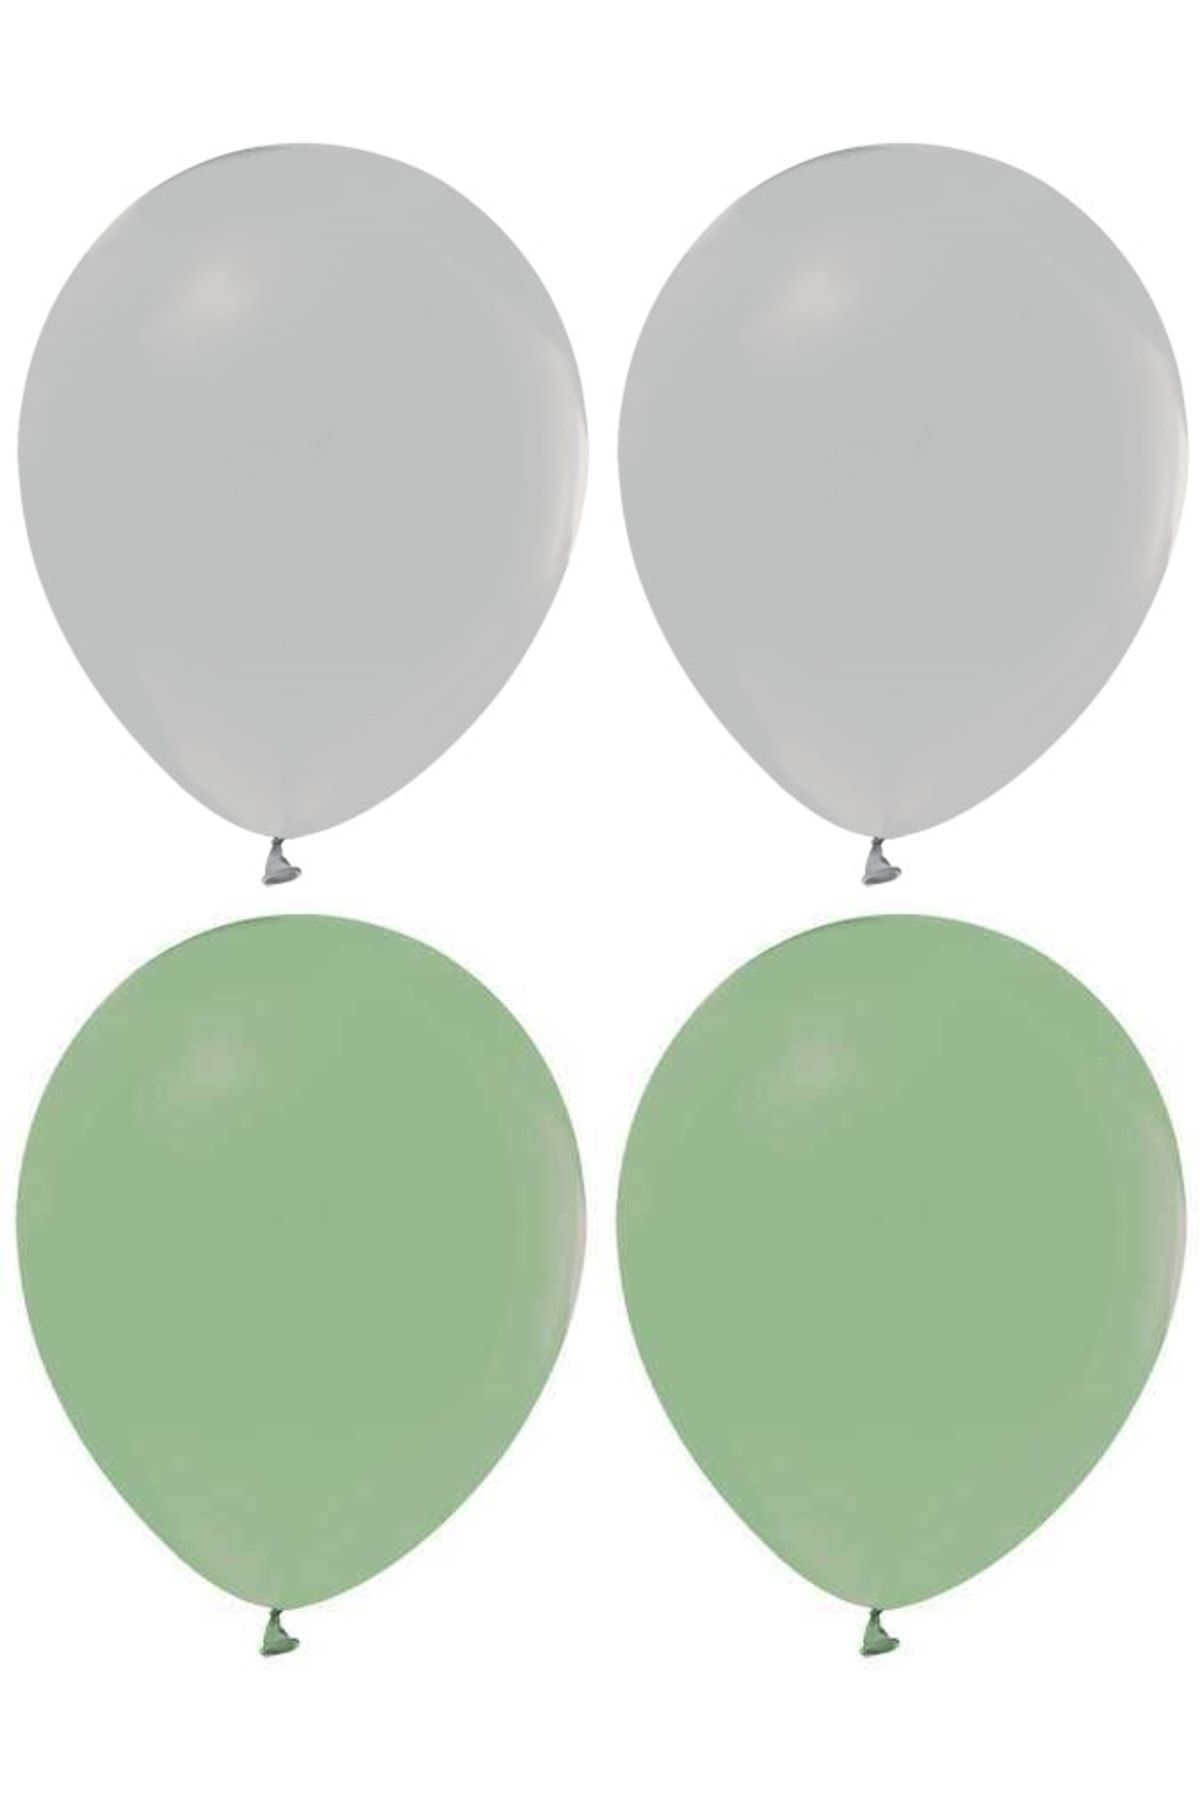 HKNYS Kuf Yeşili Ve Gri Renk Karışık Lateks Pastel Balon60 Adet + Balon Zinciri Hediyeli